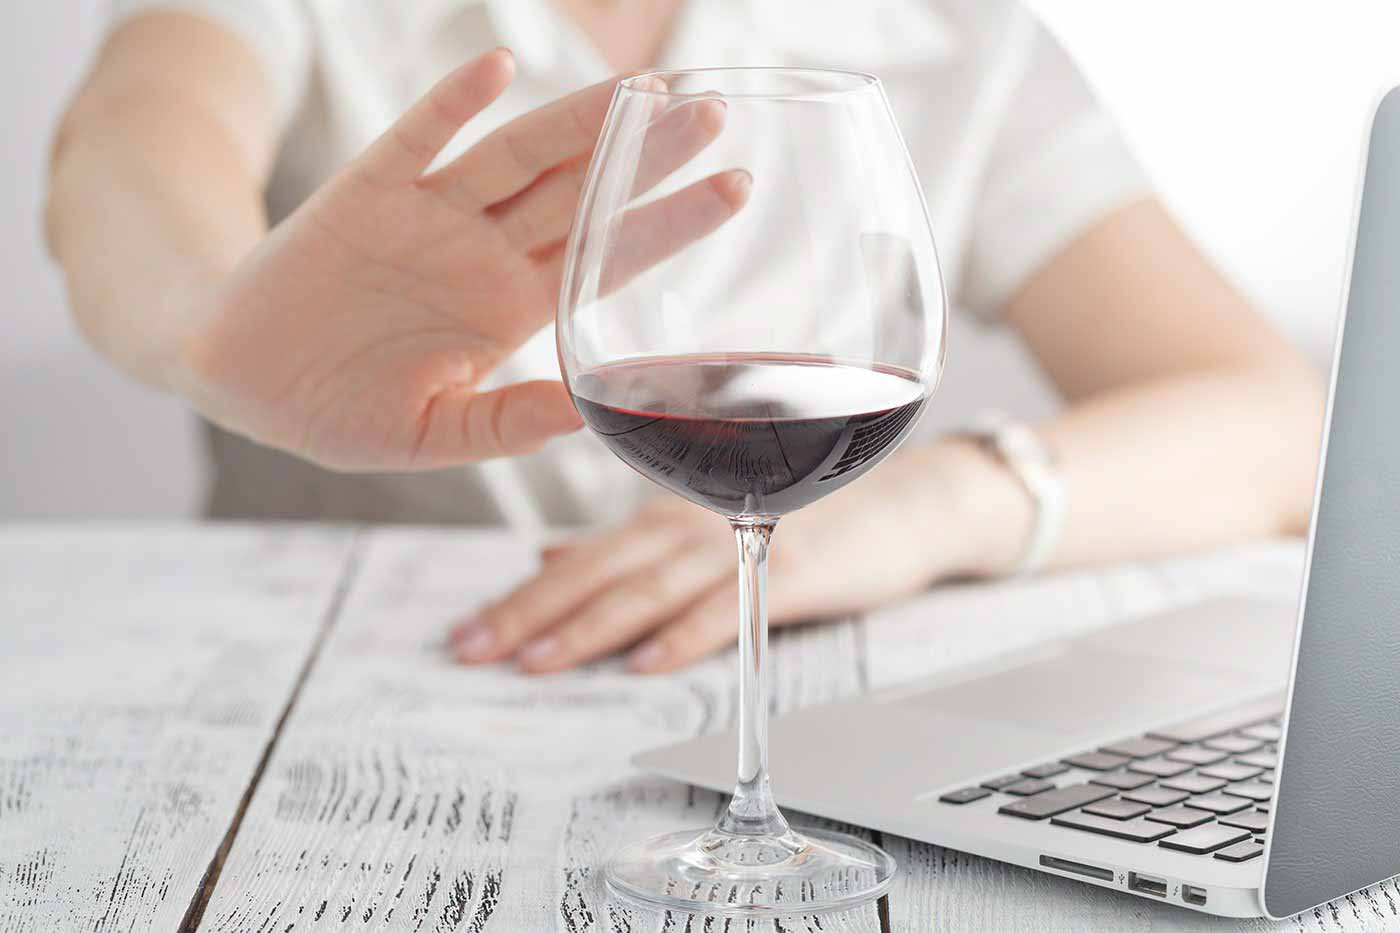 Популярный миф о пользе красного вина развеян